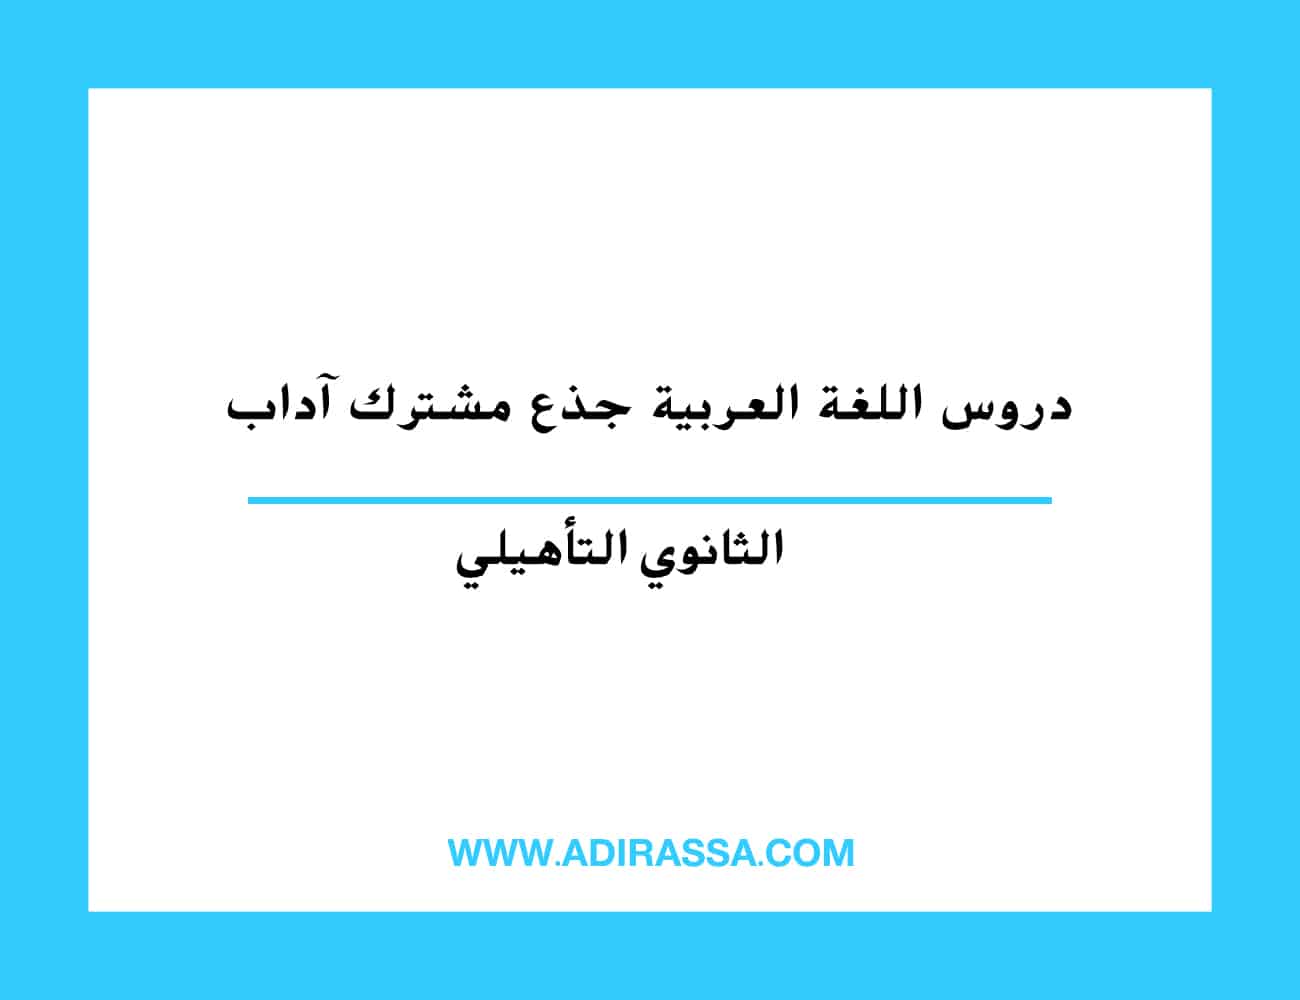 دروس اللغة العربية جذع مشترك آداب بالمدرسة المغربية